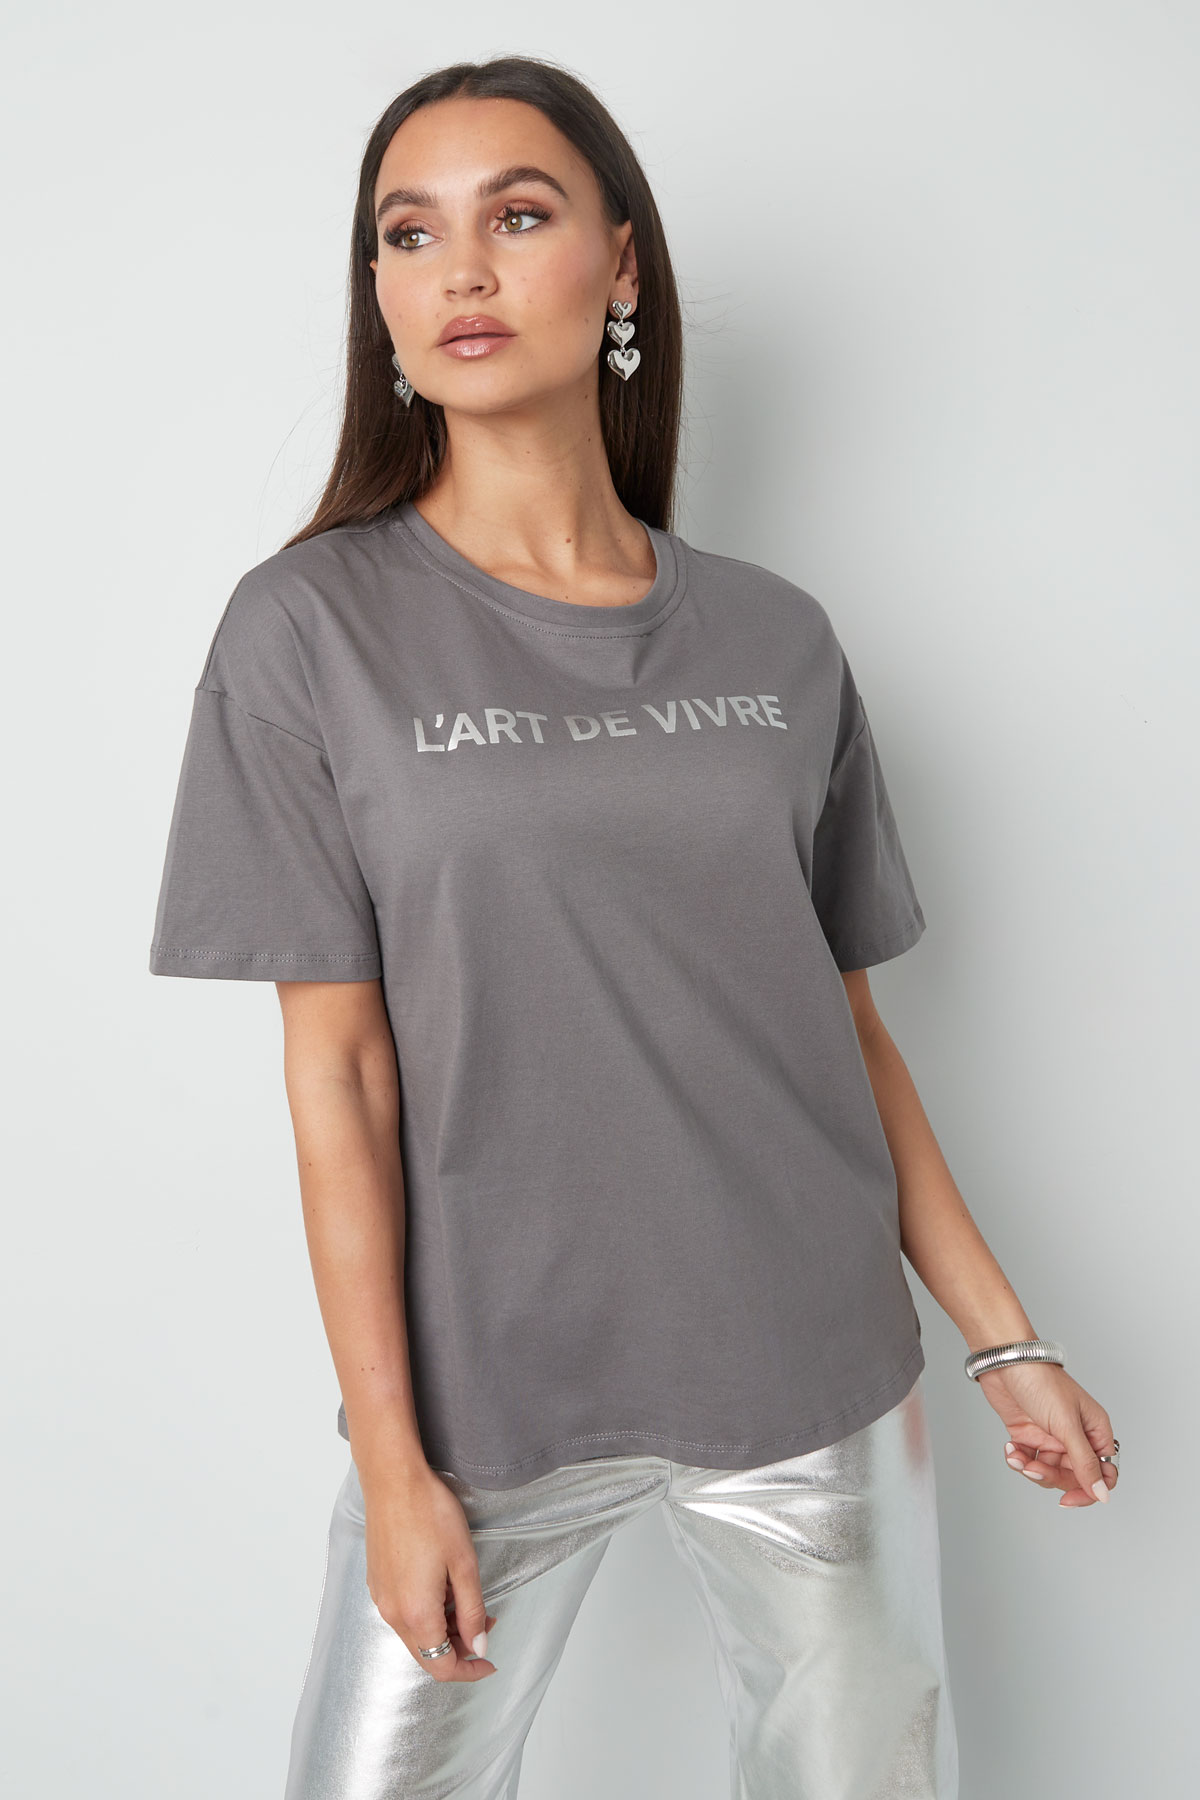 T-shirt l'art de vivre - gris argent Image2